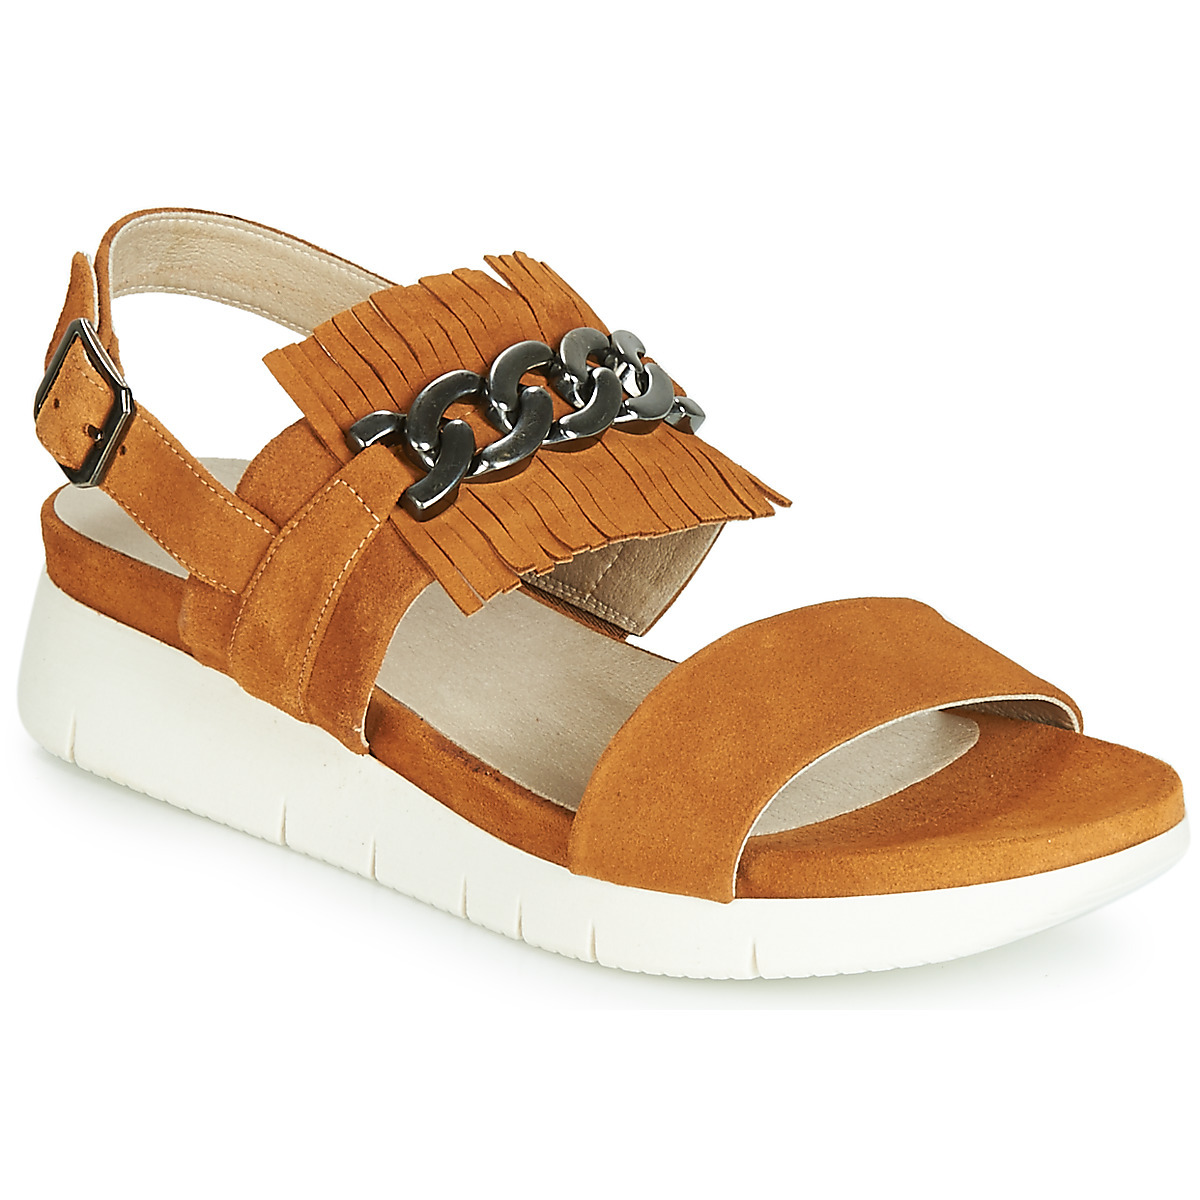 Spartoo - Women's Sandals - Brown - Dorking GOOFASH